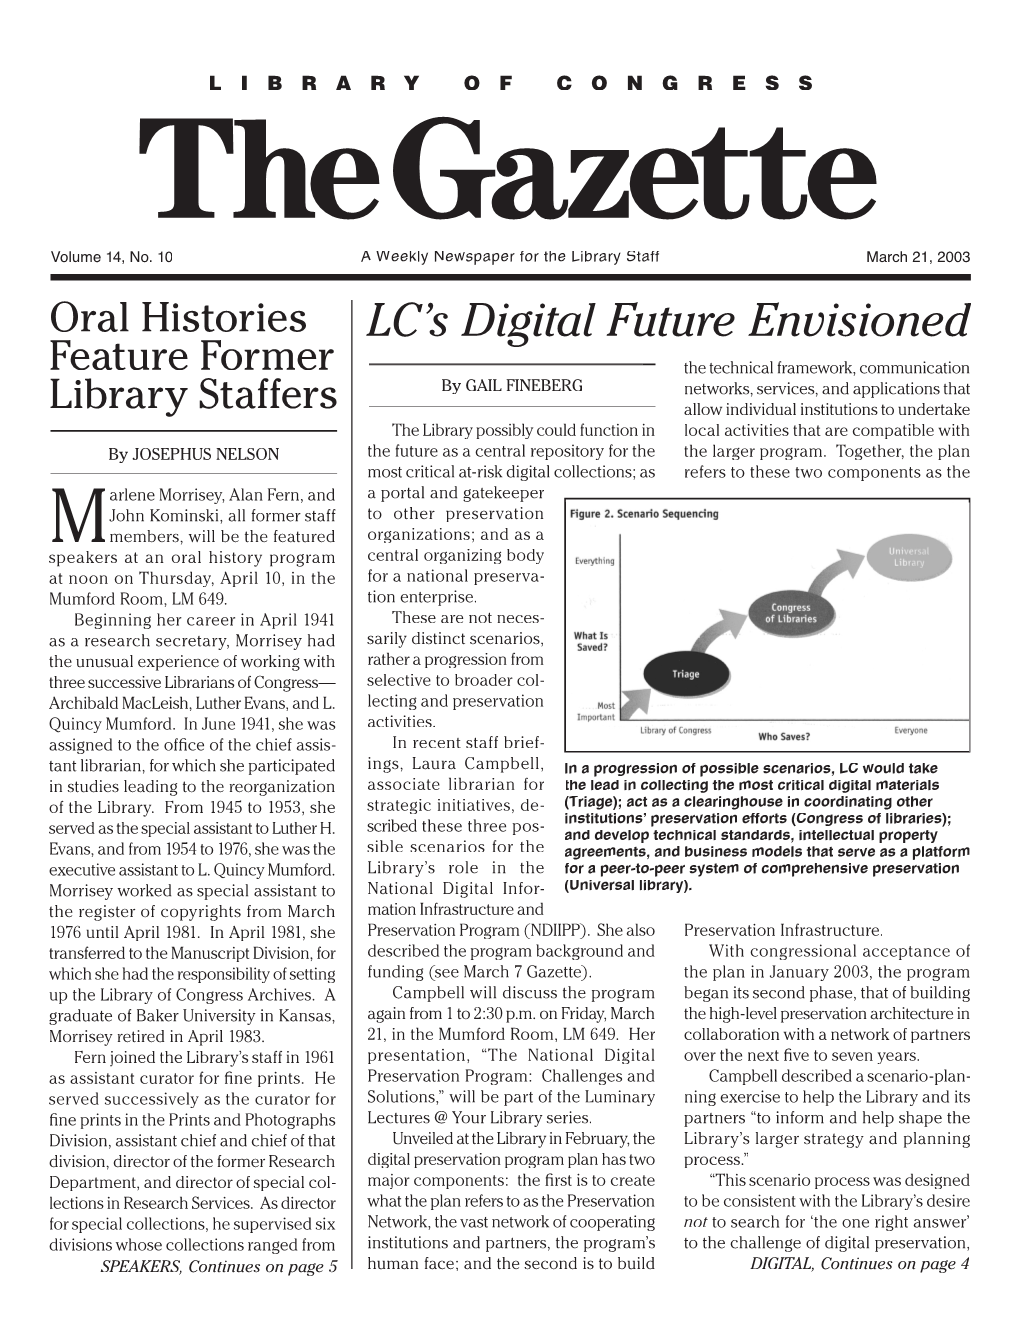 LC's Digital Future Envisioned